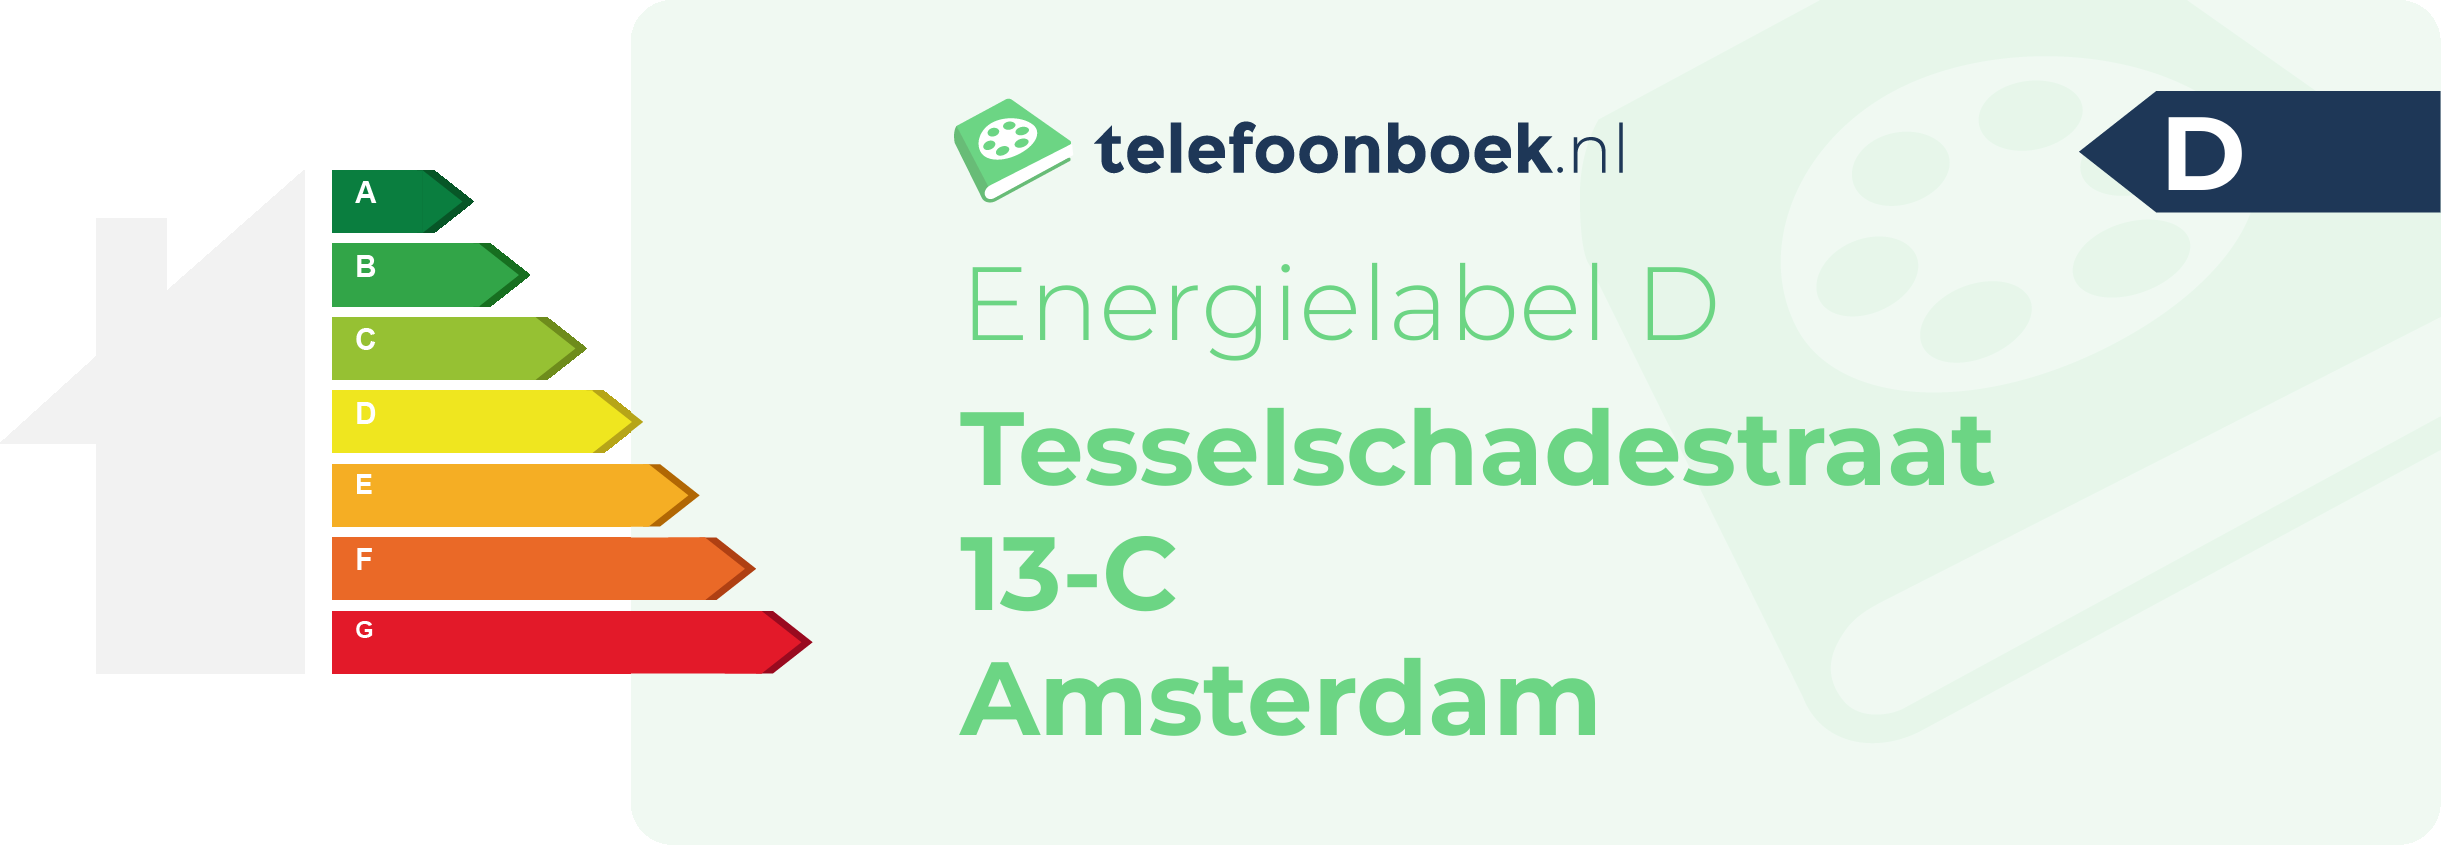 Energielabel Tesselschadestraat 13-C Amsterdam